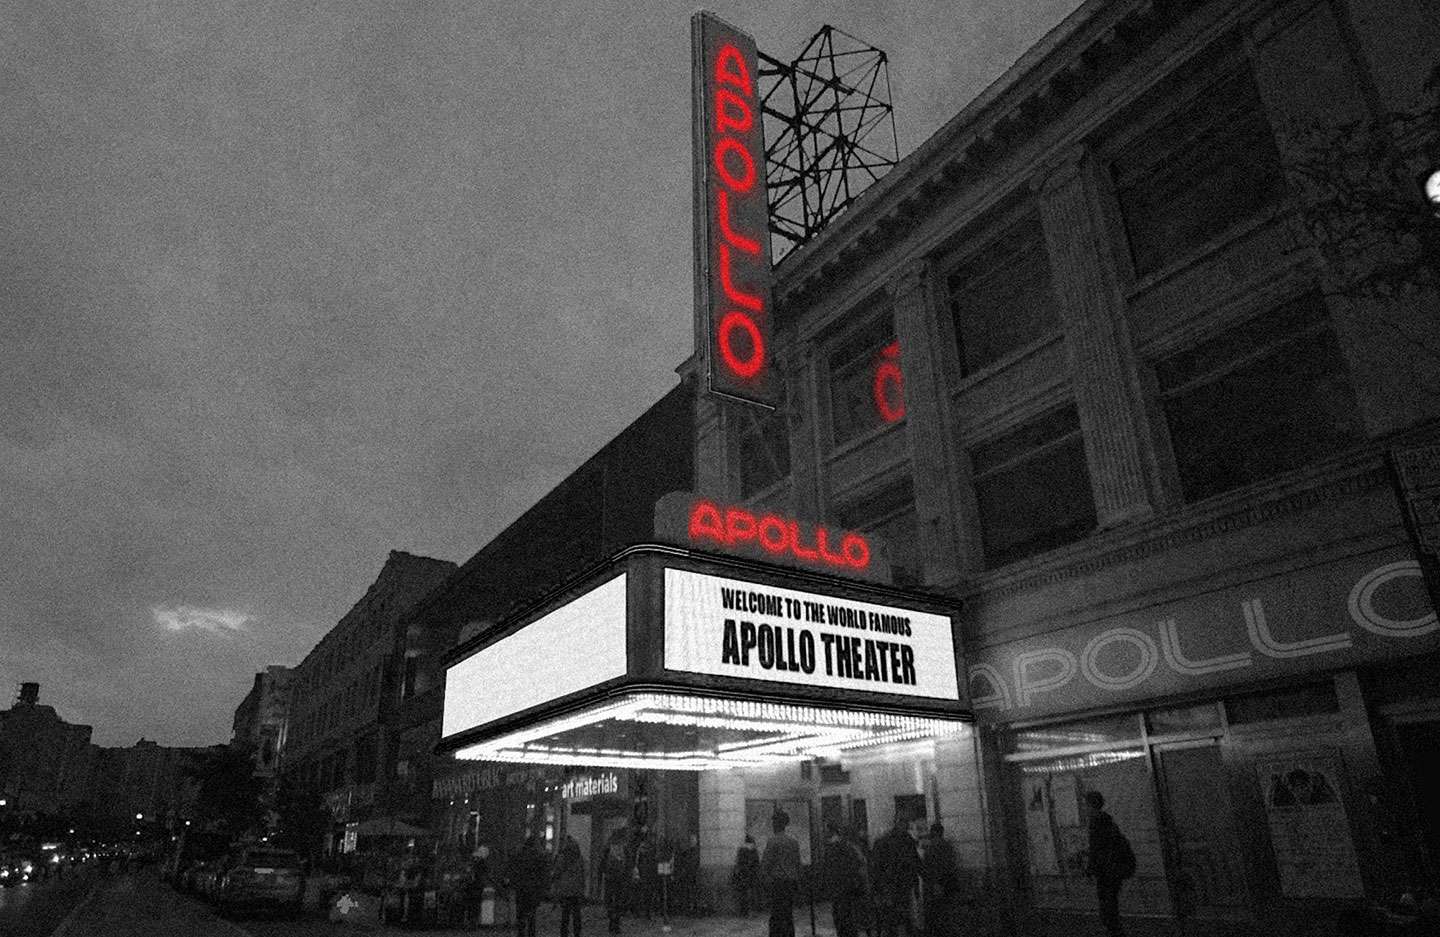 Apollo Theater Rebrand